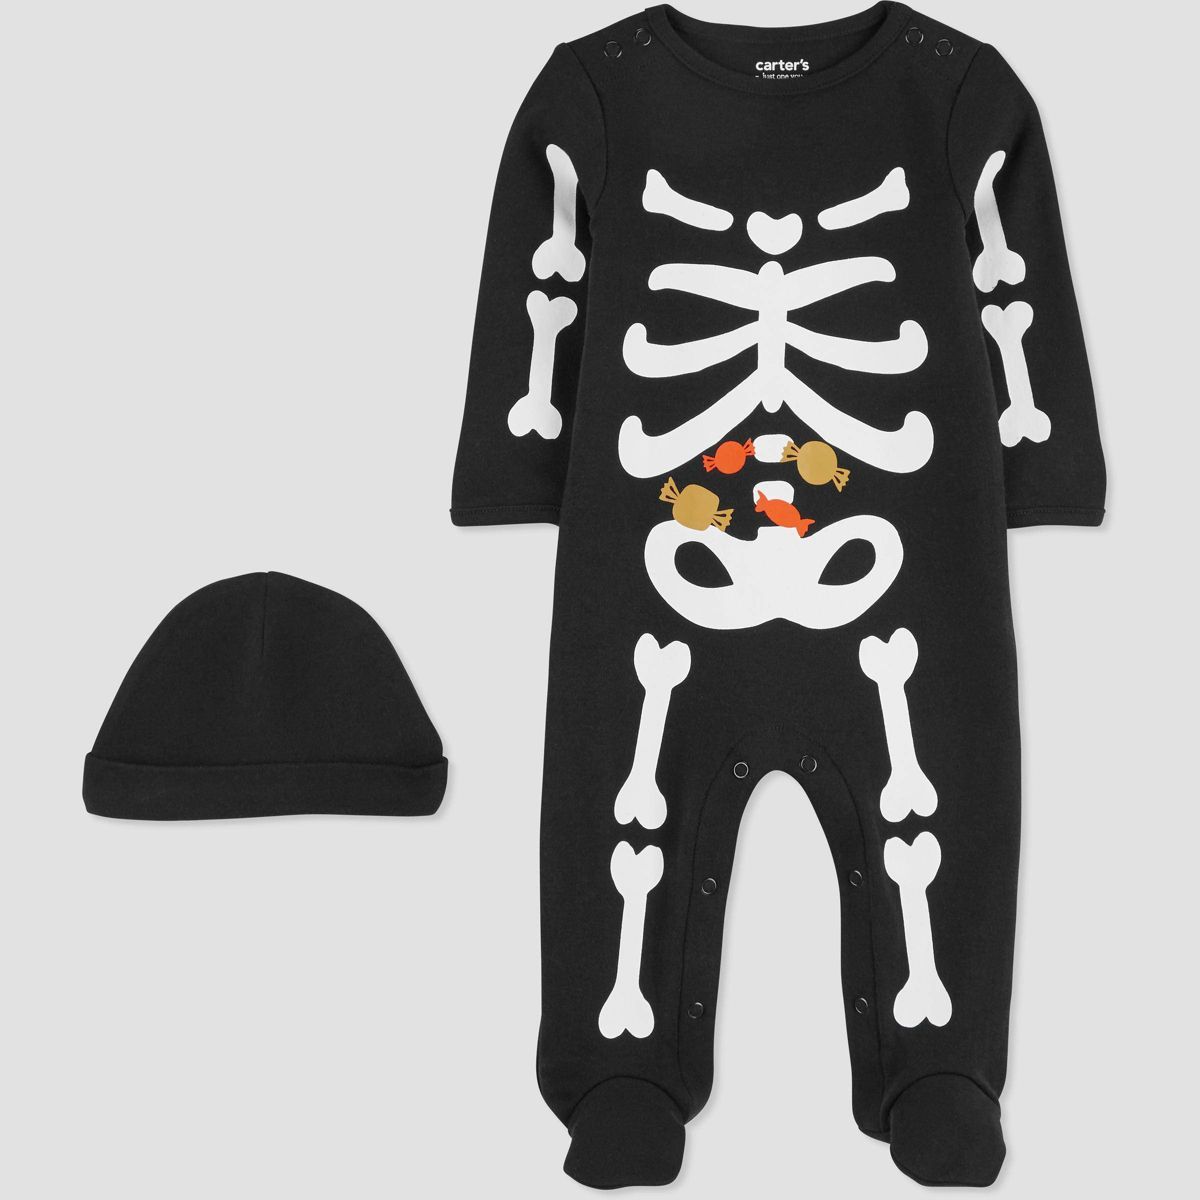 Carter's Just One You® Baby Skeleton Sleep N' Play - Black | Target